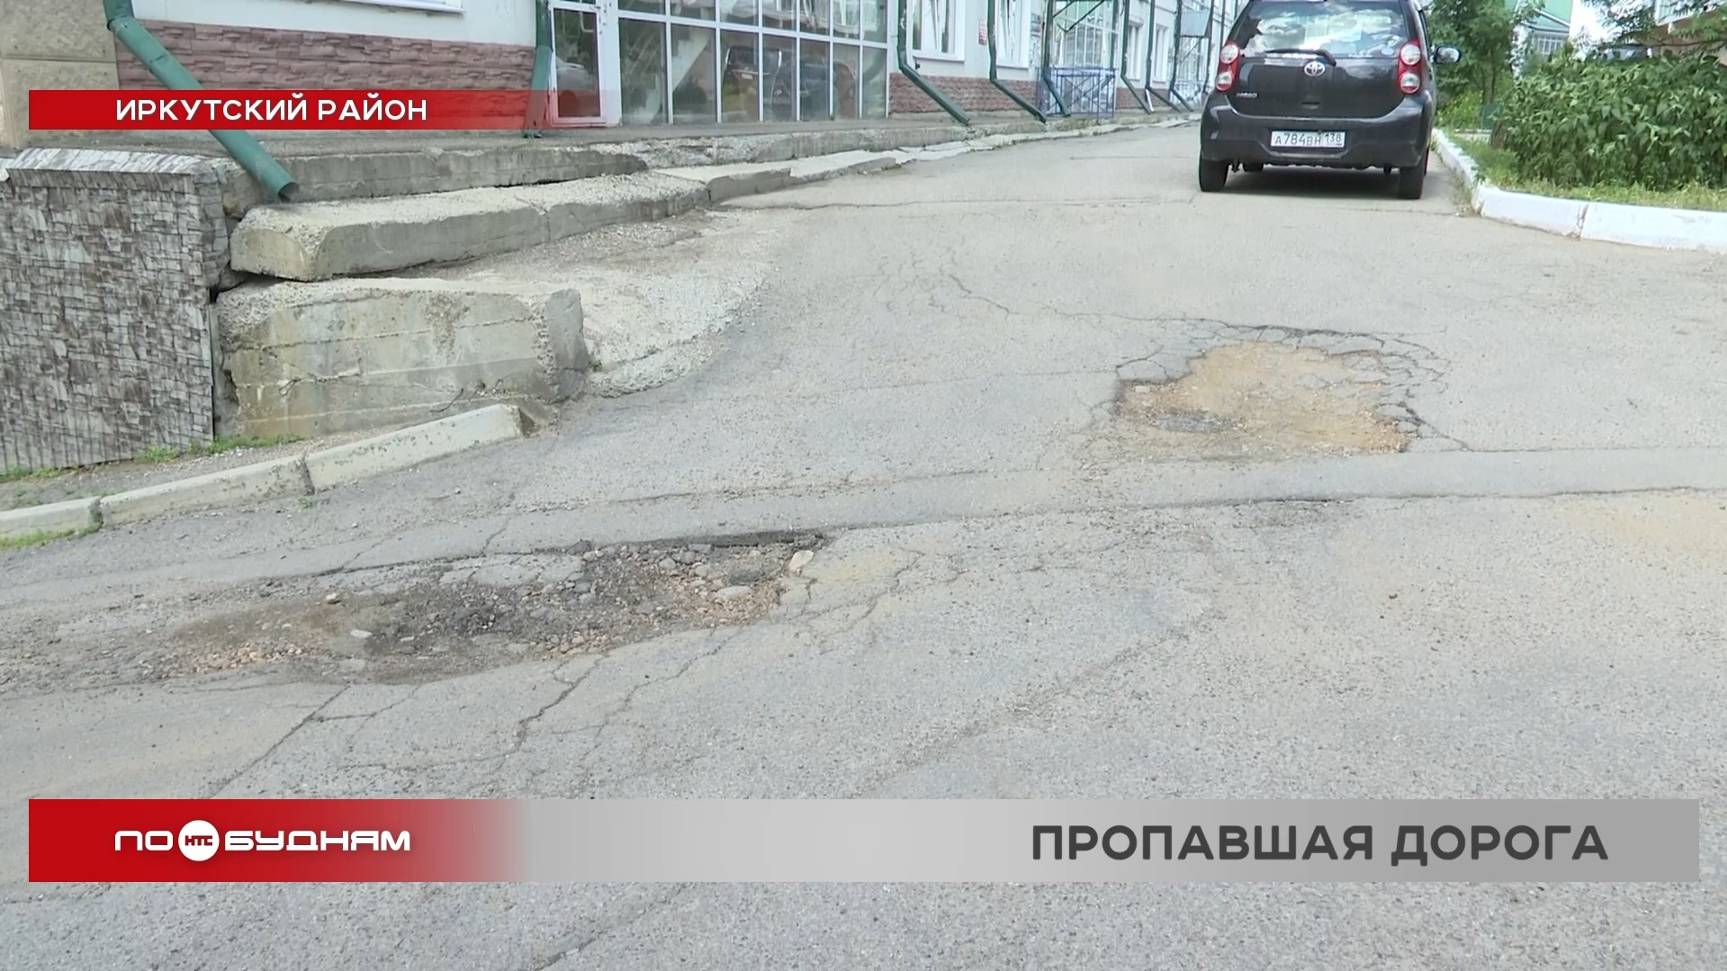 Дороги превратились в решето в микрорайоне Зелёный берег под Иркутском